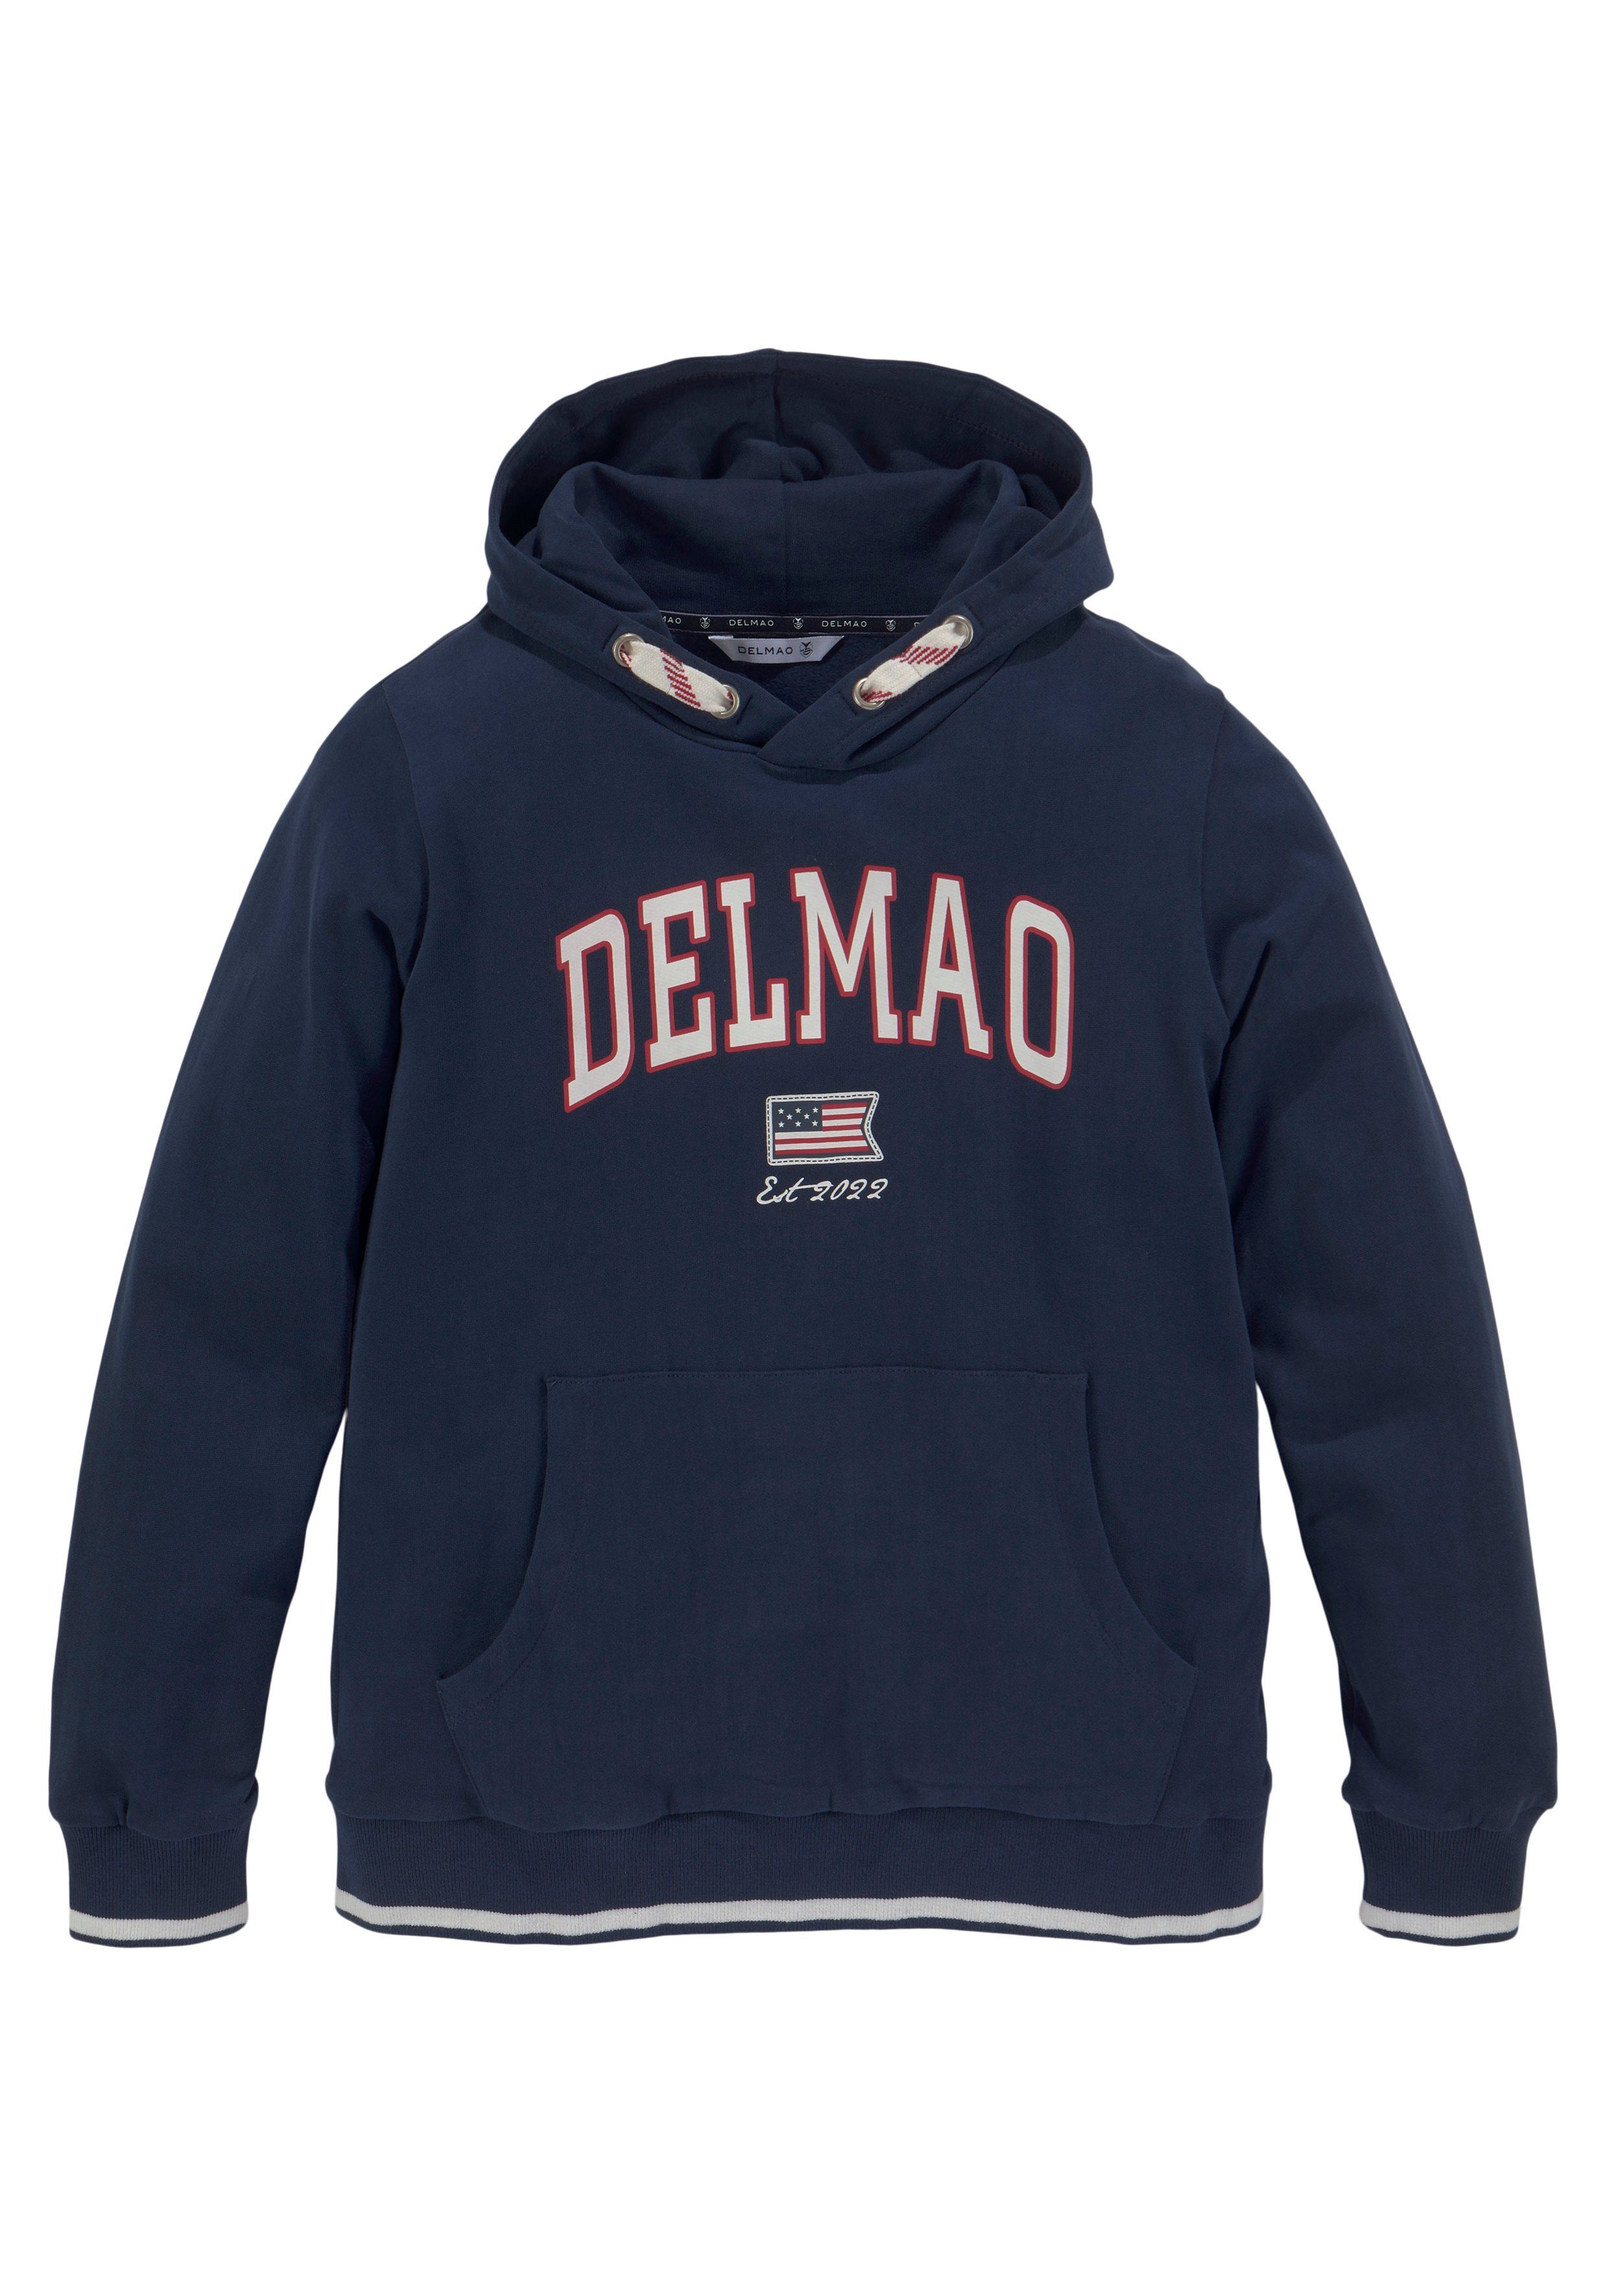 DELMAO Kapuzensweatshirt für Jungen, Logo-Sweathirt der Delmao Marke neuen